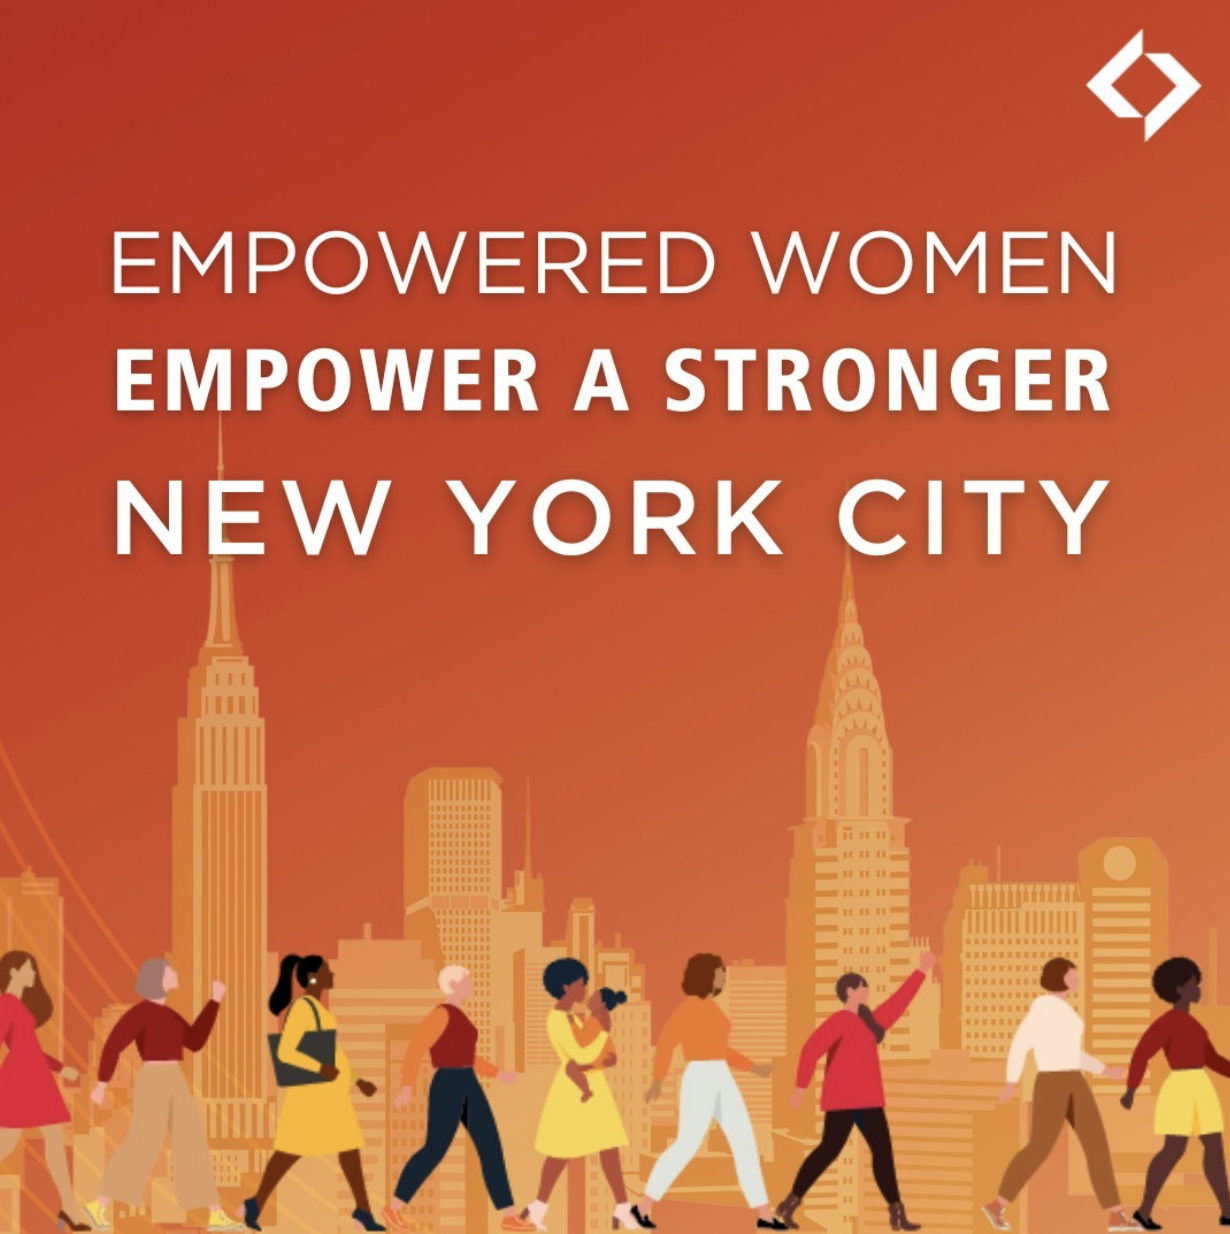 Empowered women new york city graphic 